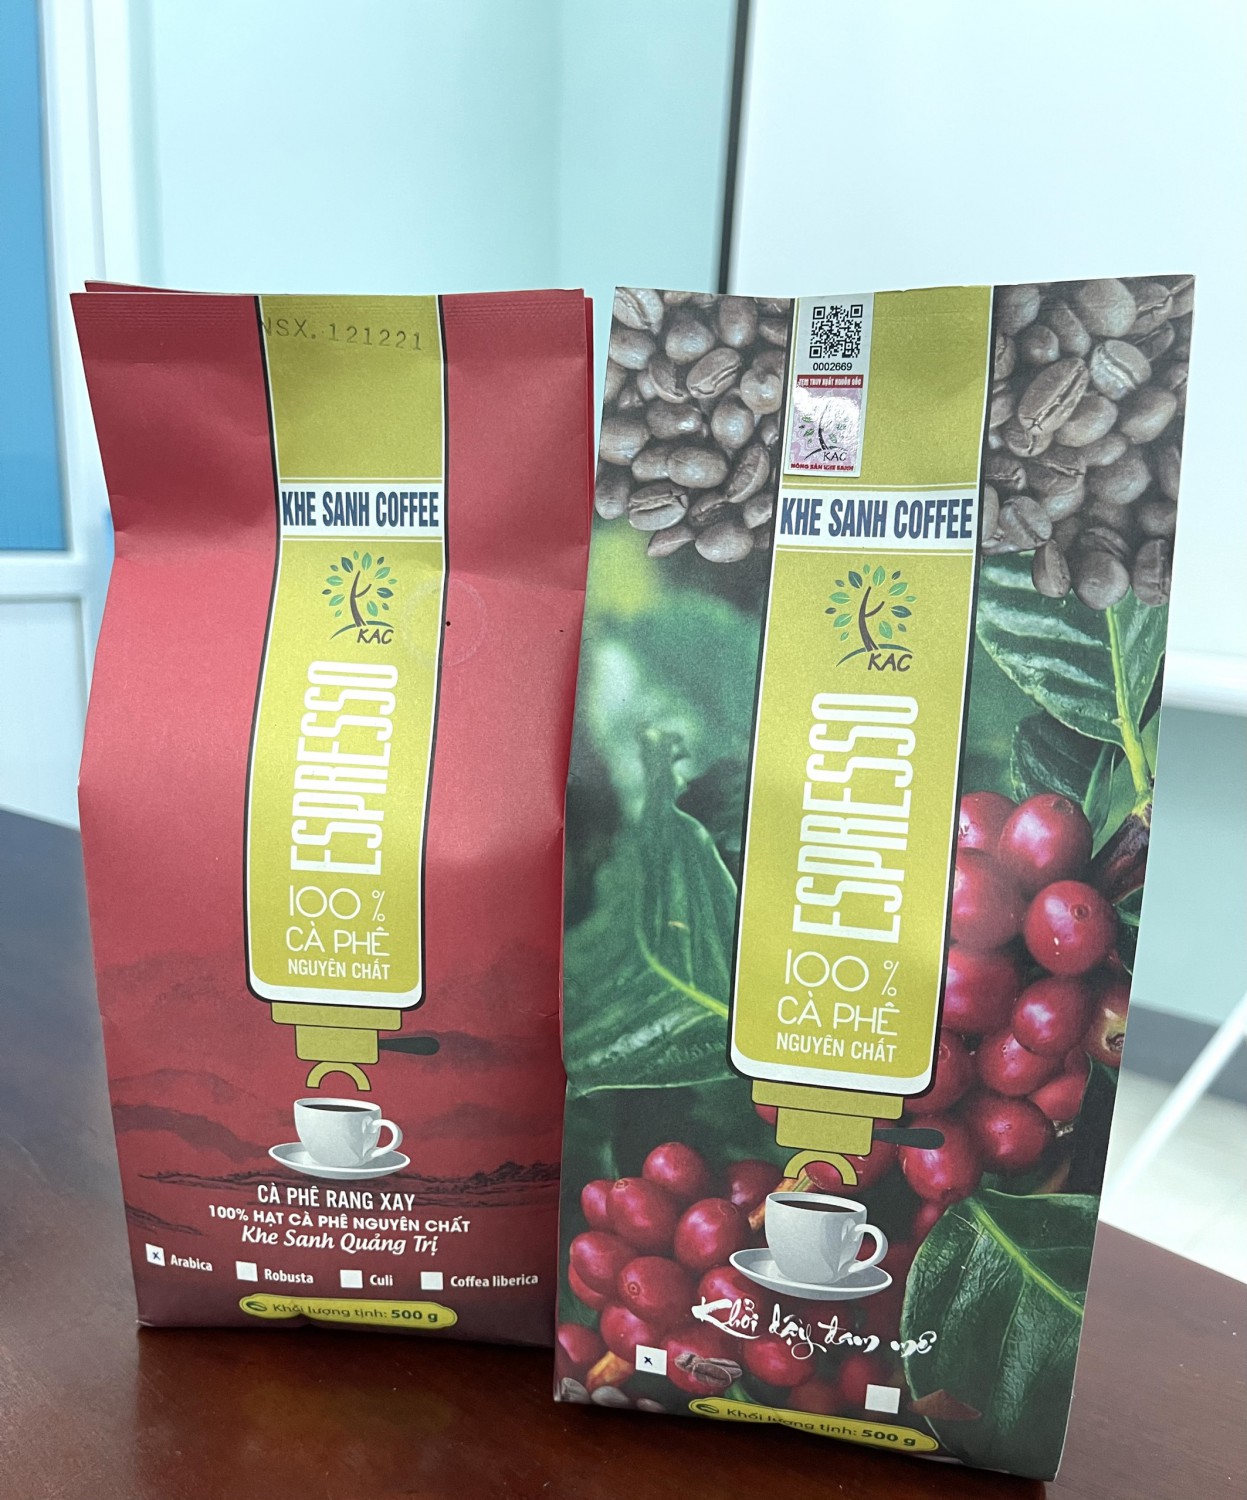 Sản phẩm Khe Sanh Coffee (dạng hạt rang) của HTX Nông sản Khe Sanh, huyện Hướng Hóa đạt hạng OCOP 4 sao năm 2021